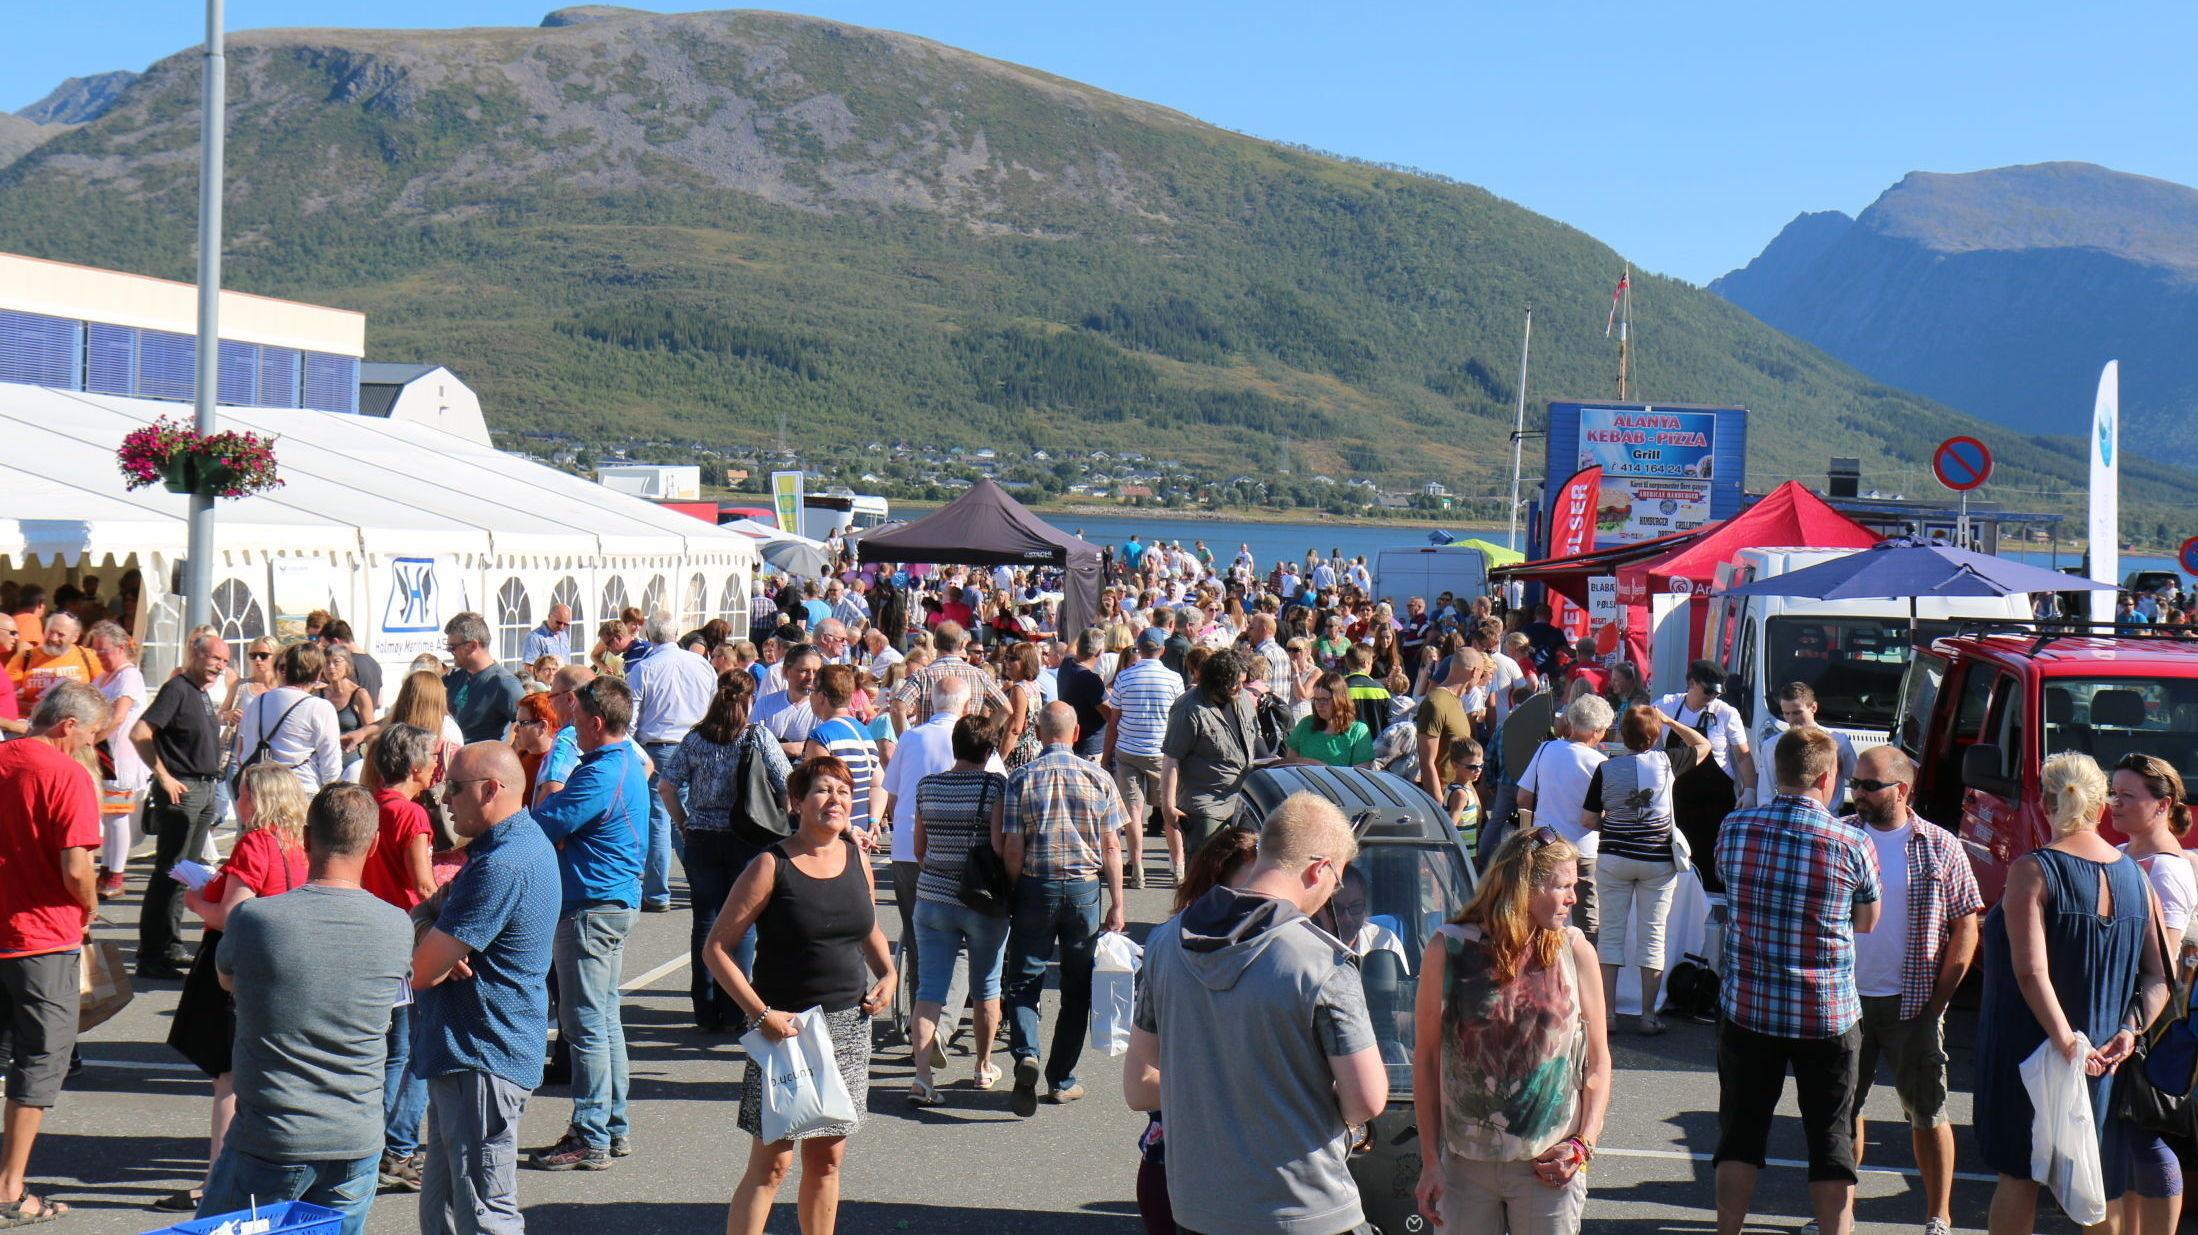 FOR MATGLADE: Det finnes masse spennende matfestivaler du kan besøke i løpet av sommeren, blant annet Vesterålen Matfestival som holdes over hele Vesterålen. Foto: Vesterålen Matfestival